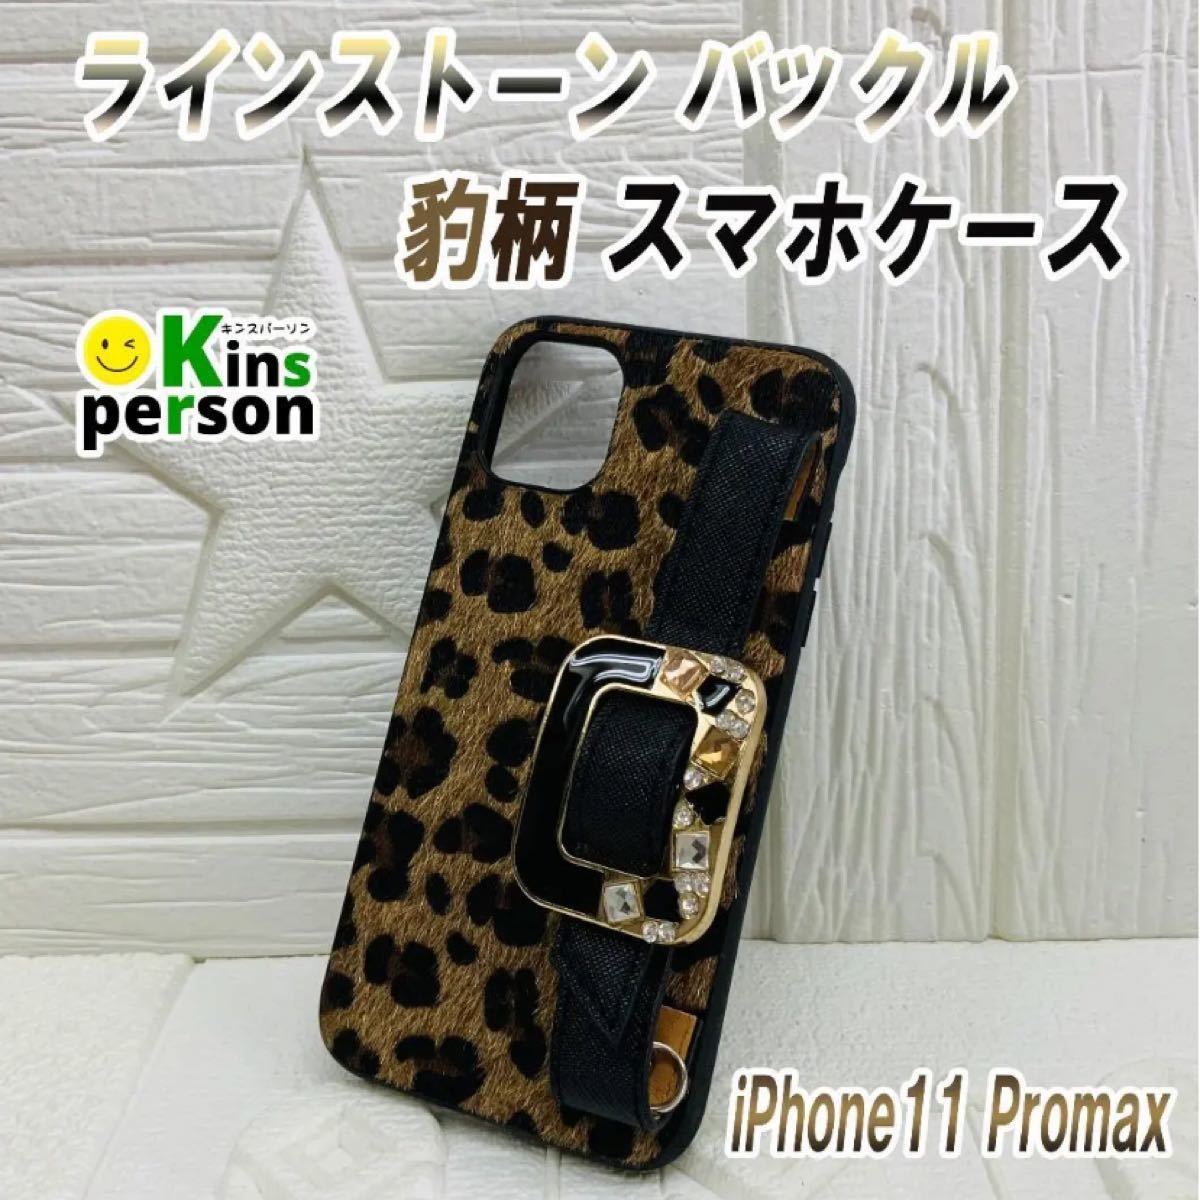 新品 iPhone11 Promax レオパード スマホケース